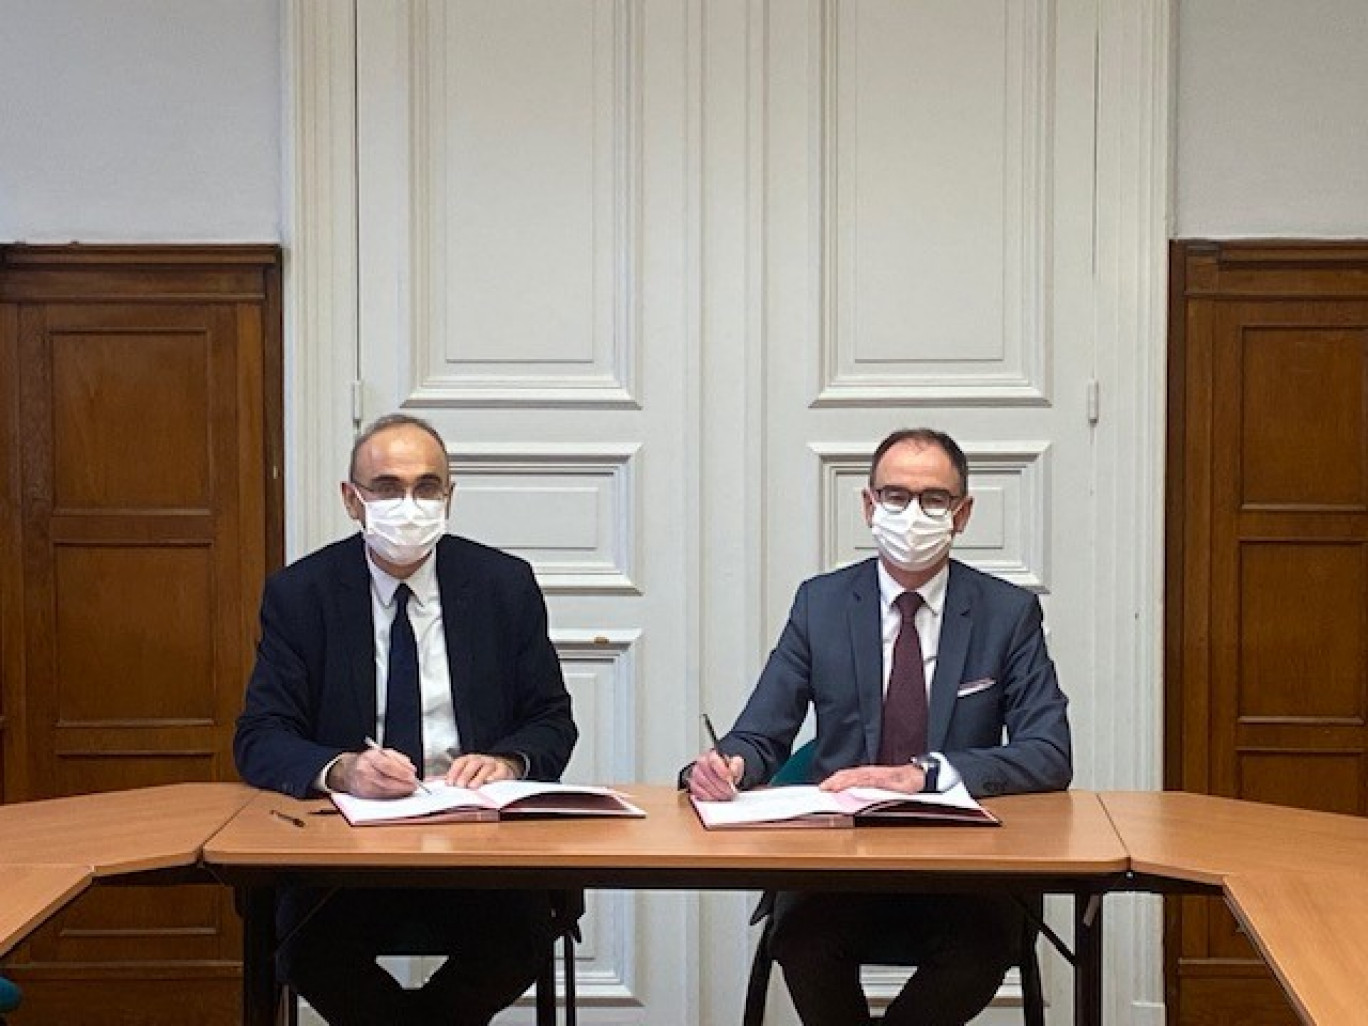 À gauche Étienne Effa, directeur, Direction départementale des Finances publiques de la Moselle, à droite Christophe Franceschi directeur régional, Urssaf Lorraine.